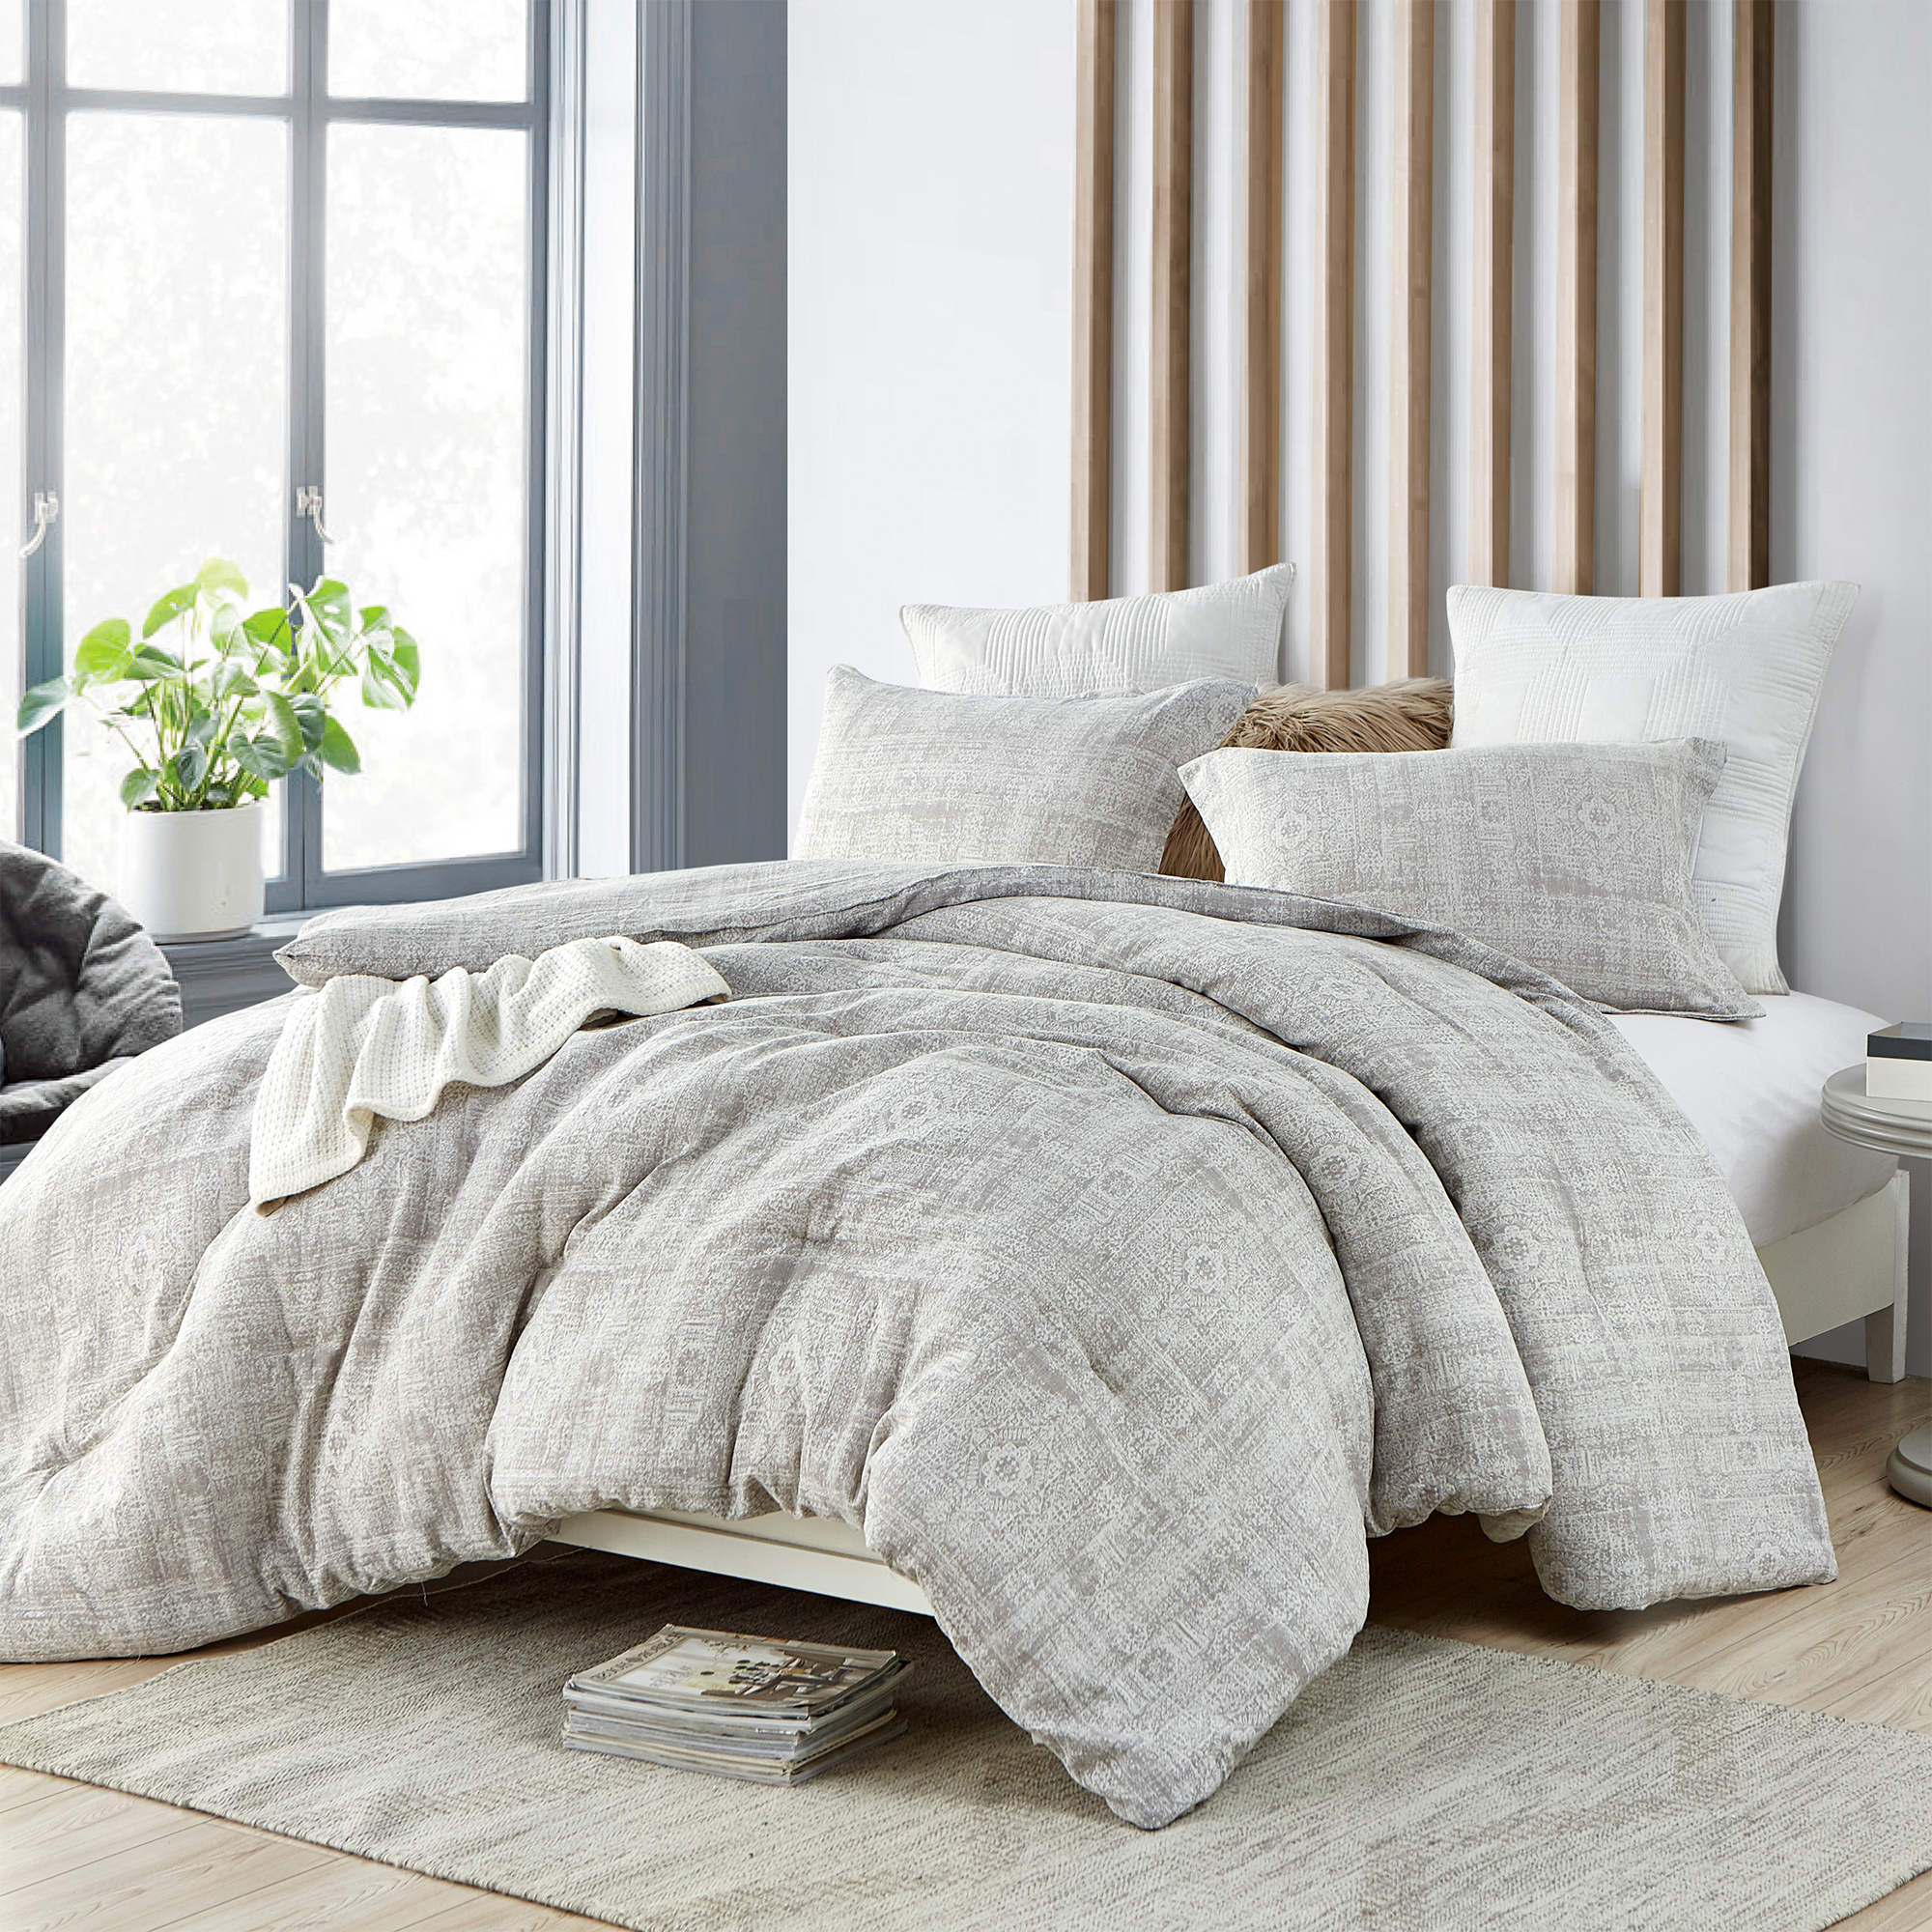 Zaw Zen Oversized Twin Comforter - 100% Yarn Dyed Cotton